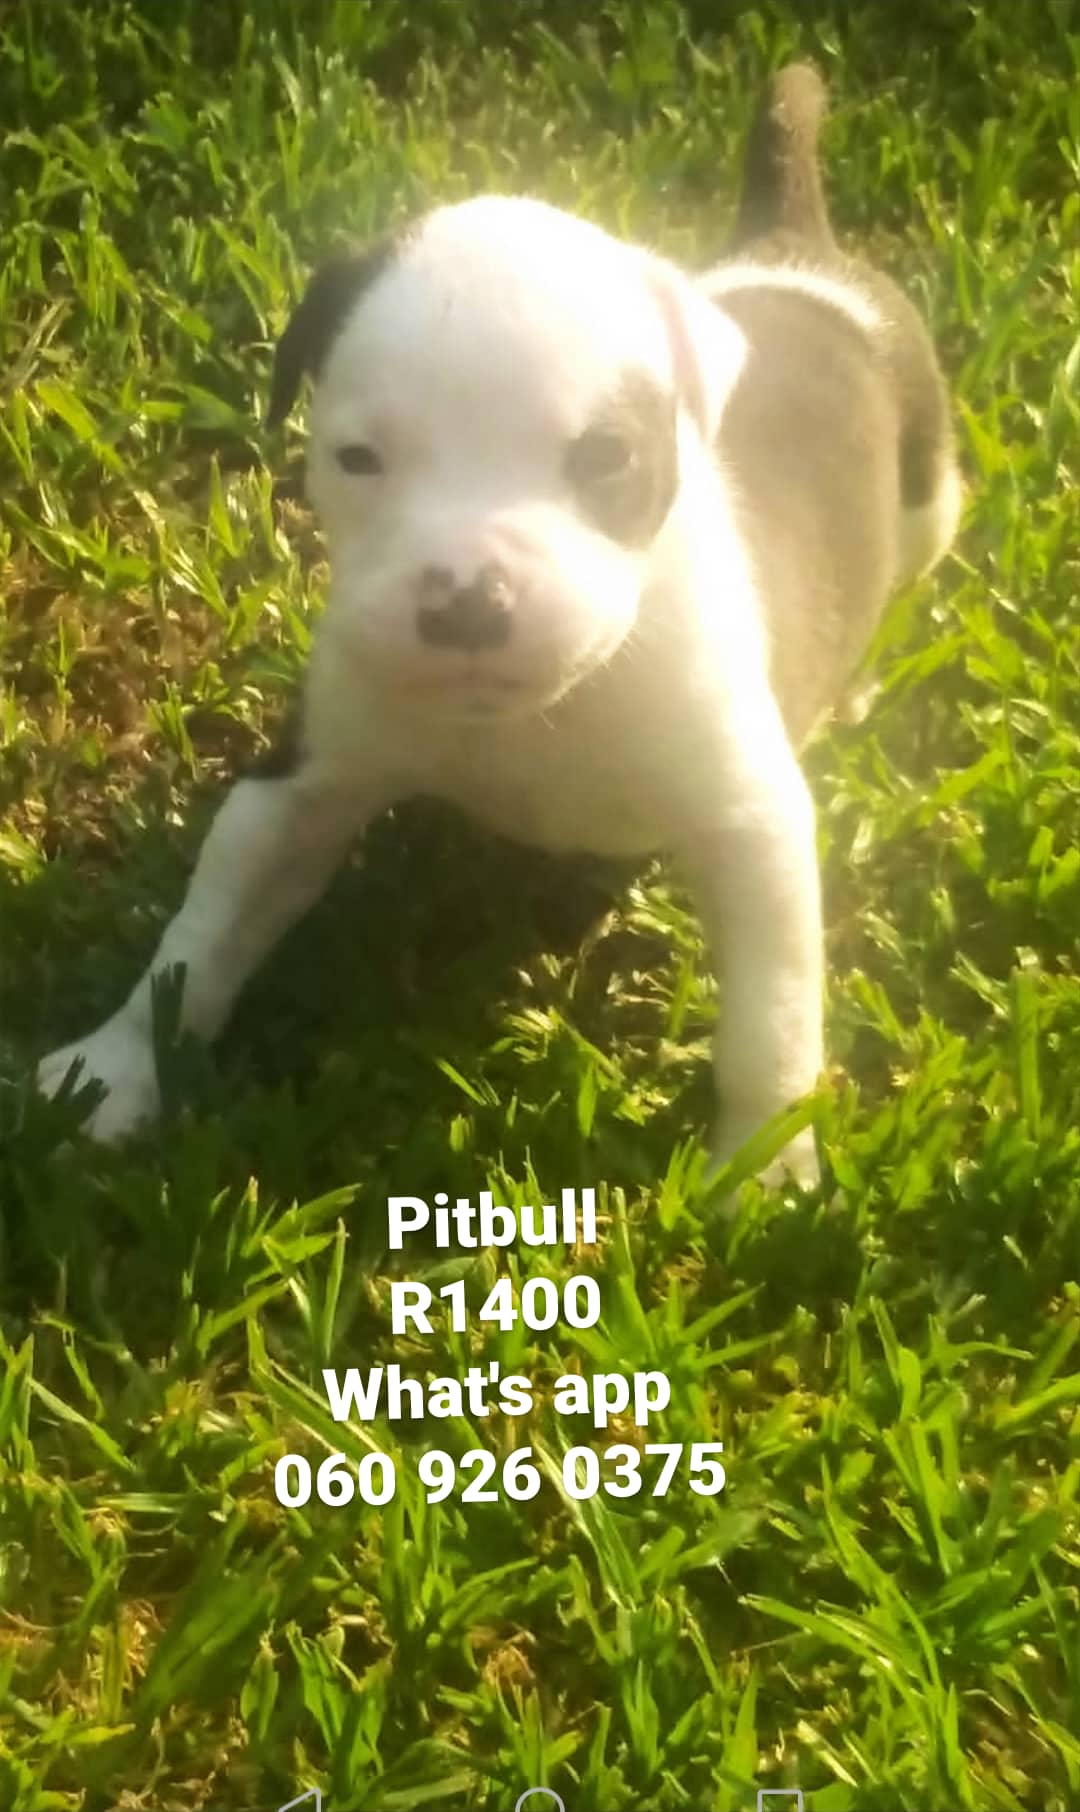 Pitbull Puppies in Pretoria (02/01/2021)